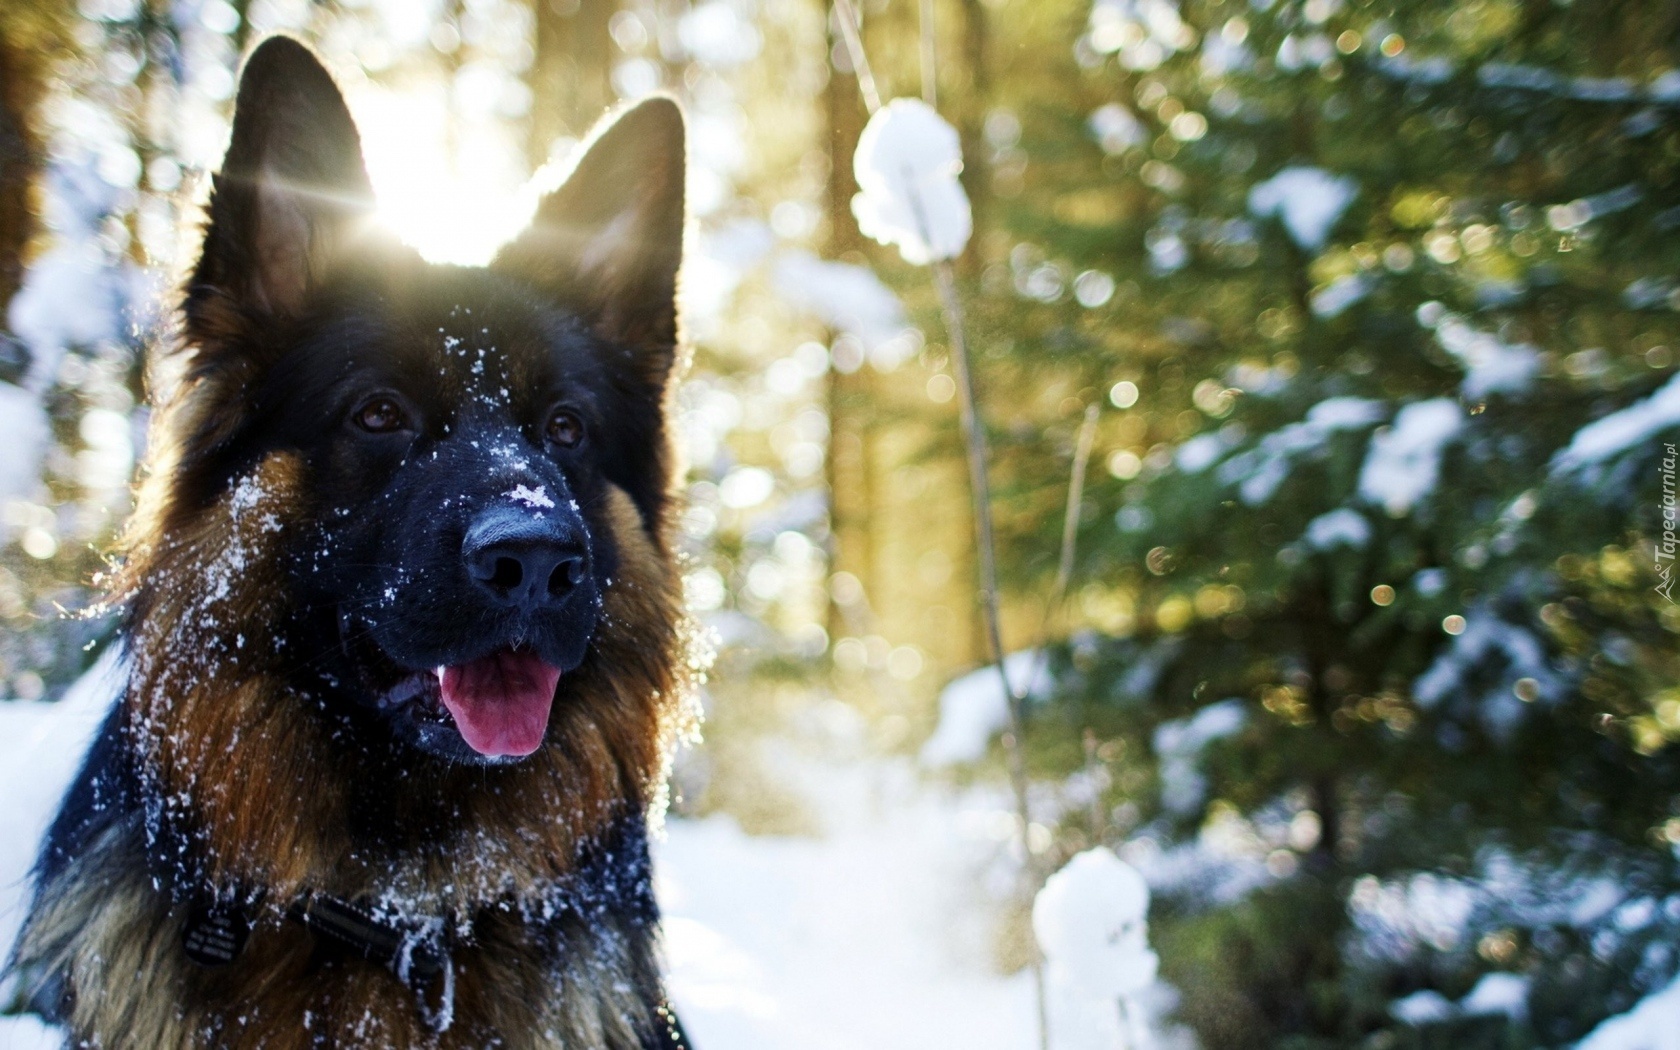 Pies, Owczarek, Niemiecki, Drzewo, Śnieg